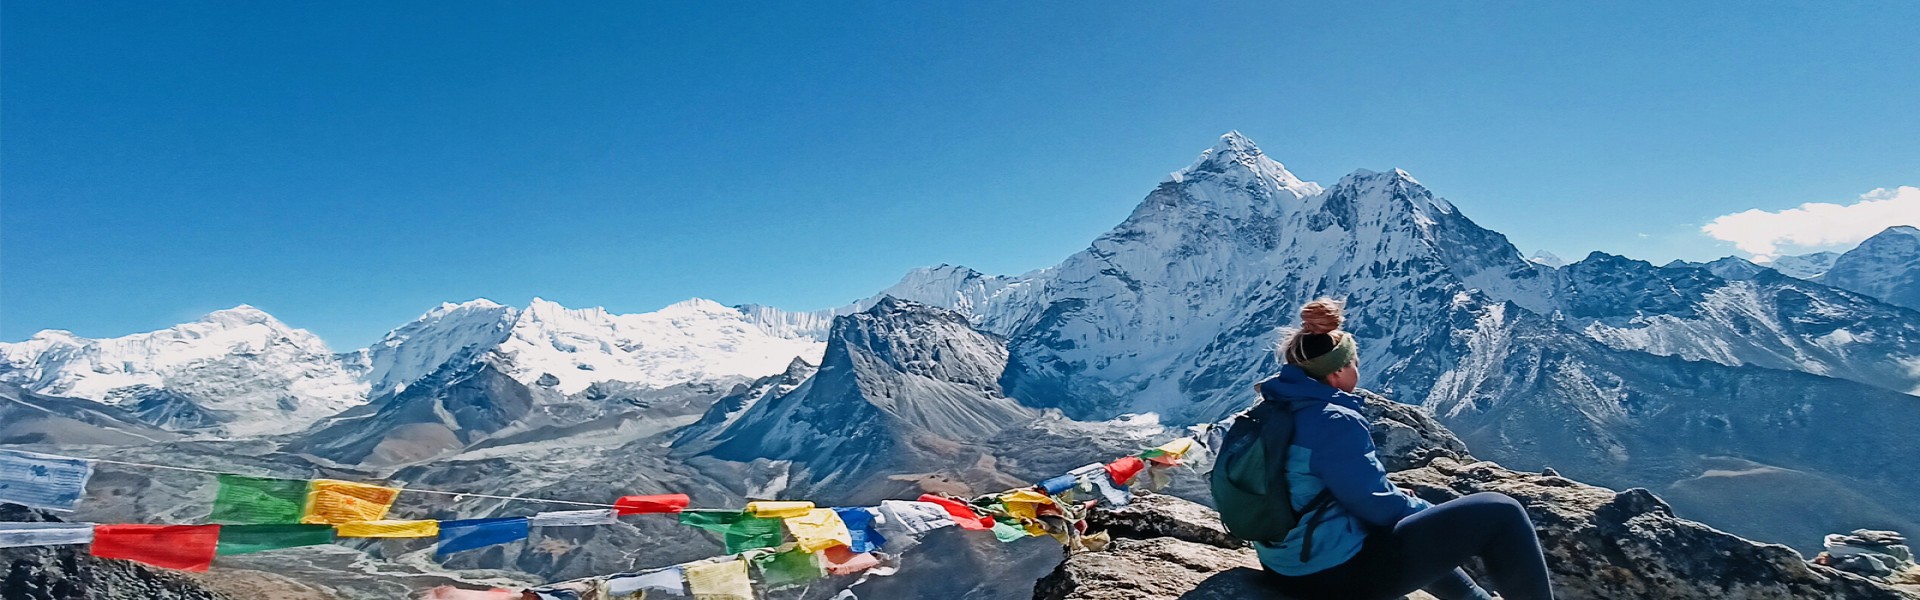 Everest High Pass Trek view